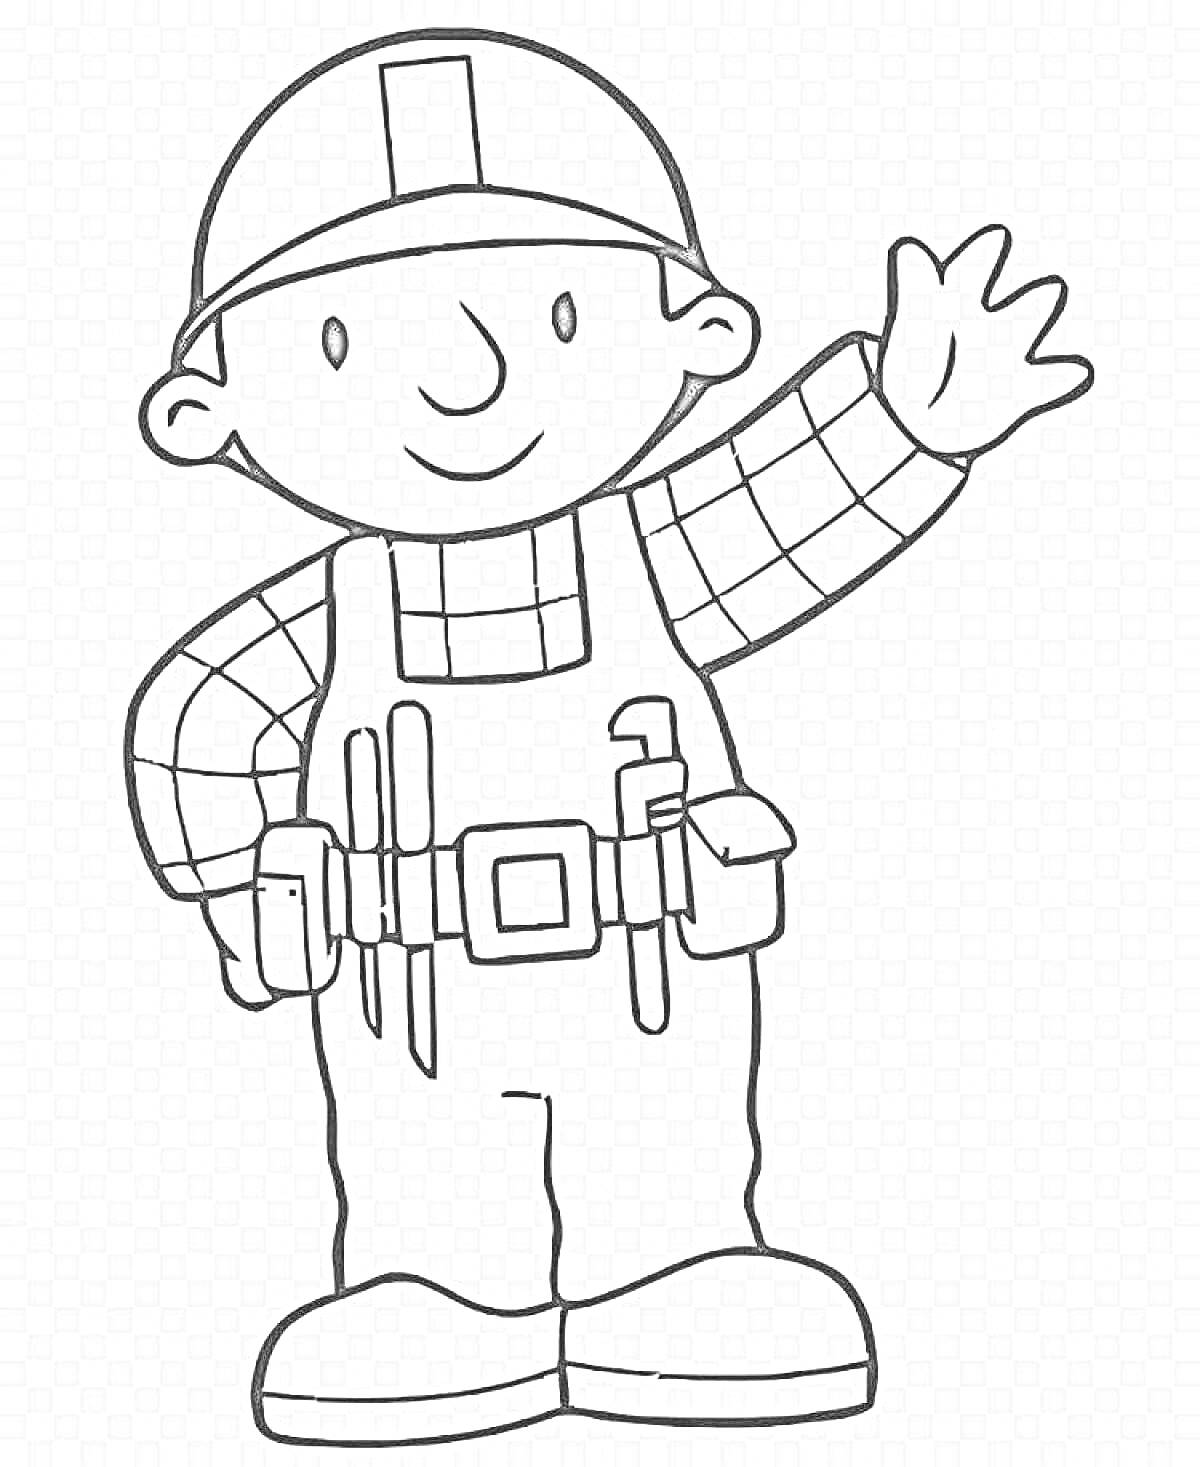 Раскраска строитель в каске с набором инструментов (мальчик в каске, рубашке в клетку, комбинезоне с ремнем для инструментов, держащий руку вверх)